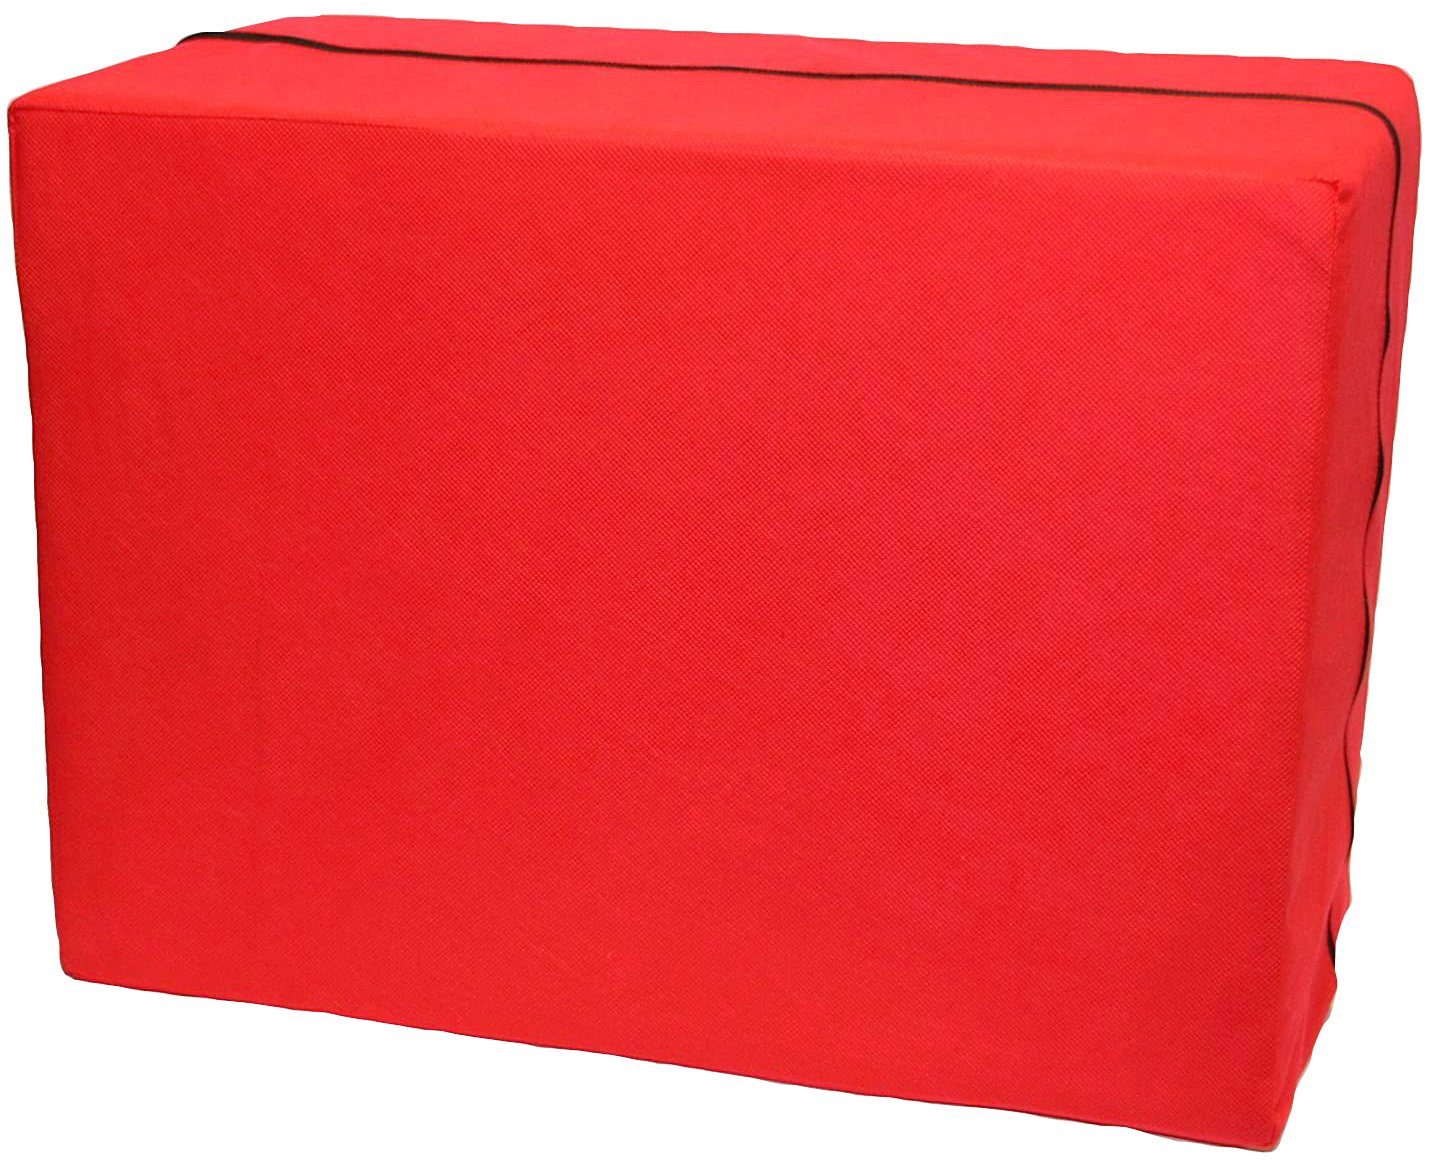 IWH Sitzhocker Bandscheibenwürfel, rot, Maße: ca. 30 x 40 x 55 cm, zur Entlastung Ihrer Wirbelsäule